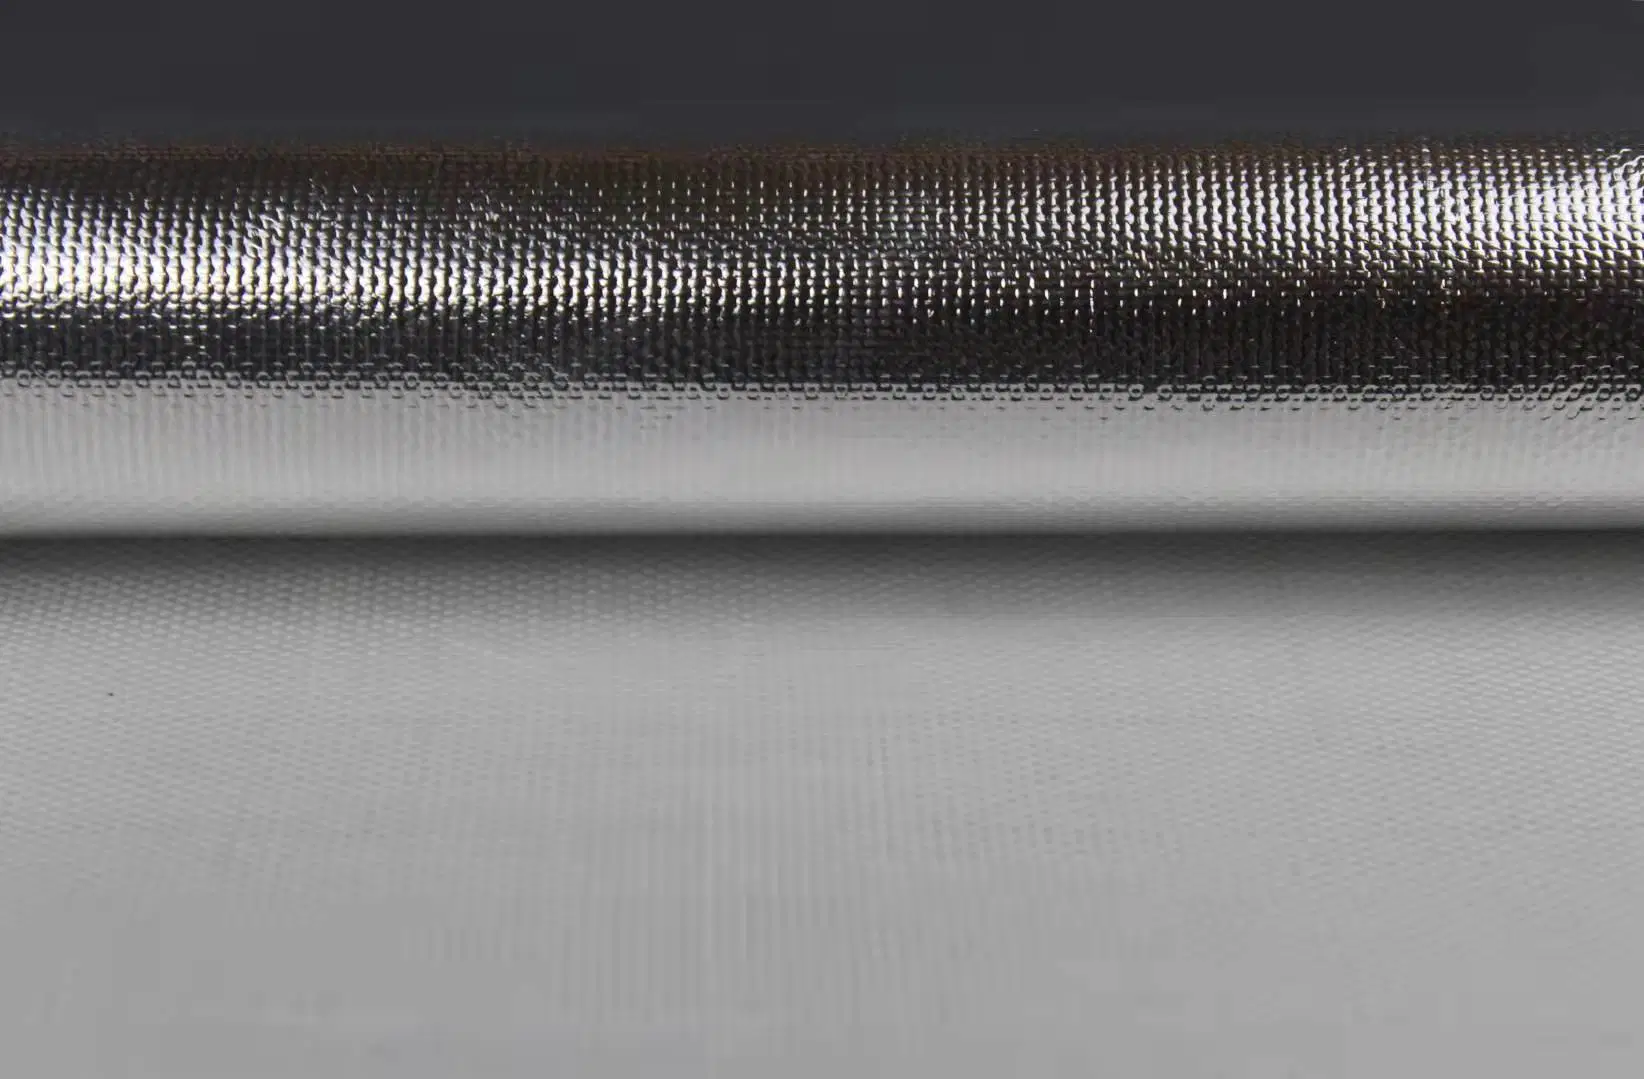 Isolamento térmico com revestimento de alumínio pano de fibra de vidro